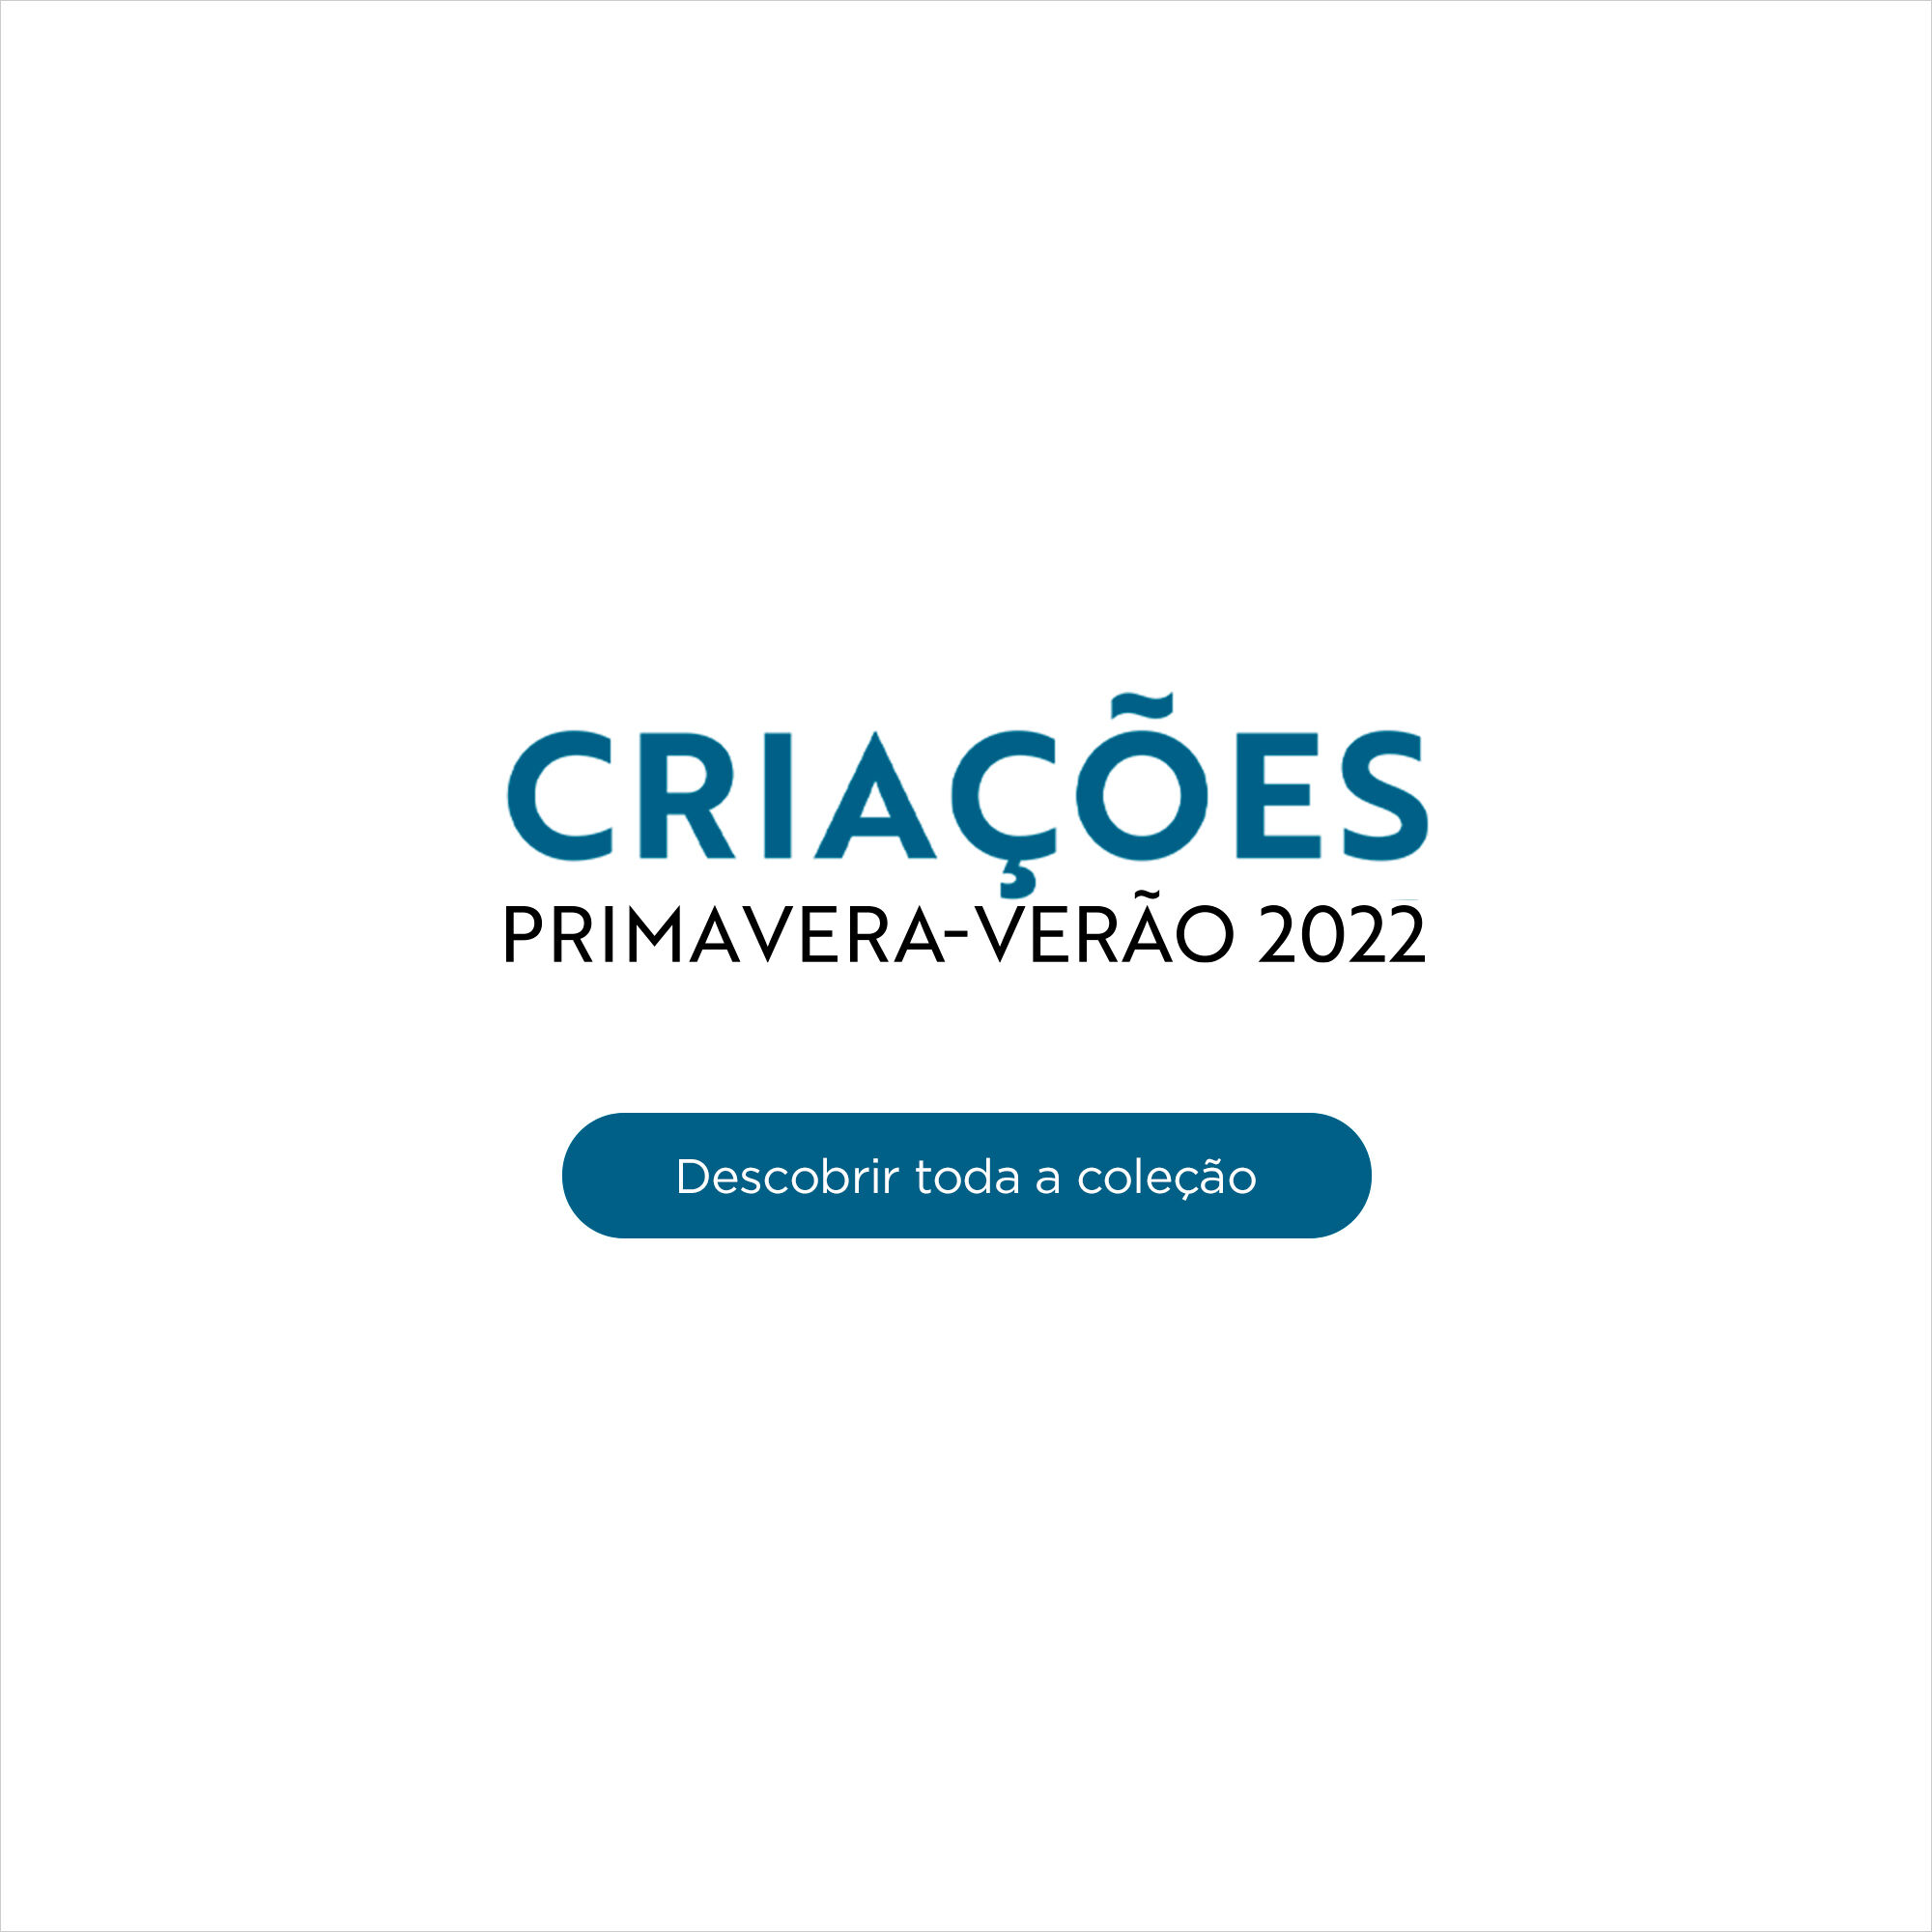 CRIAÇÕES PRIMAVERA-VERÃO 2022